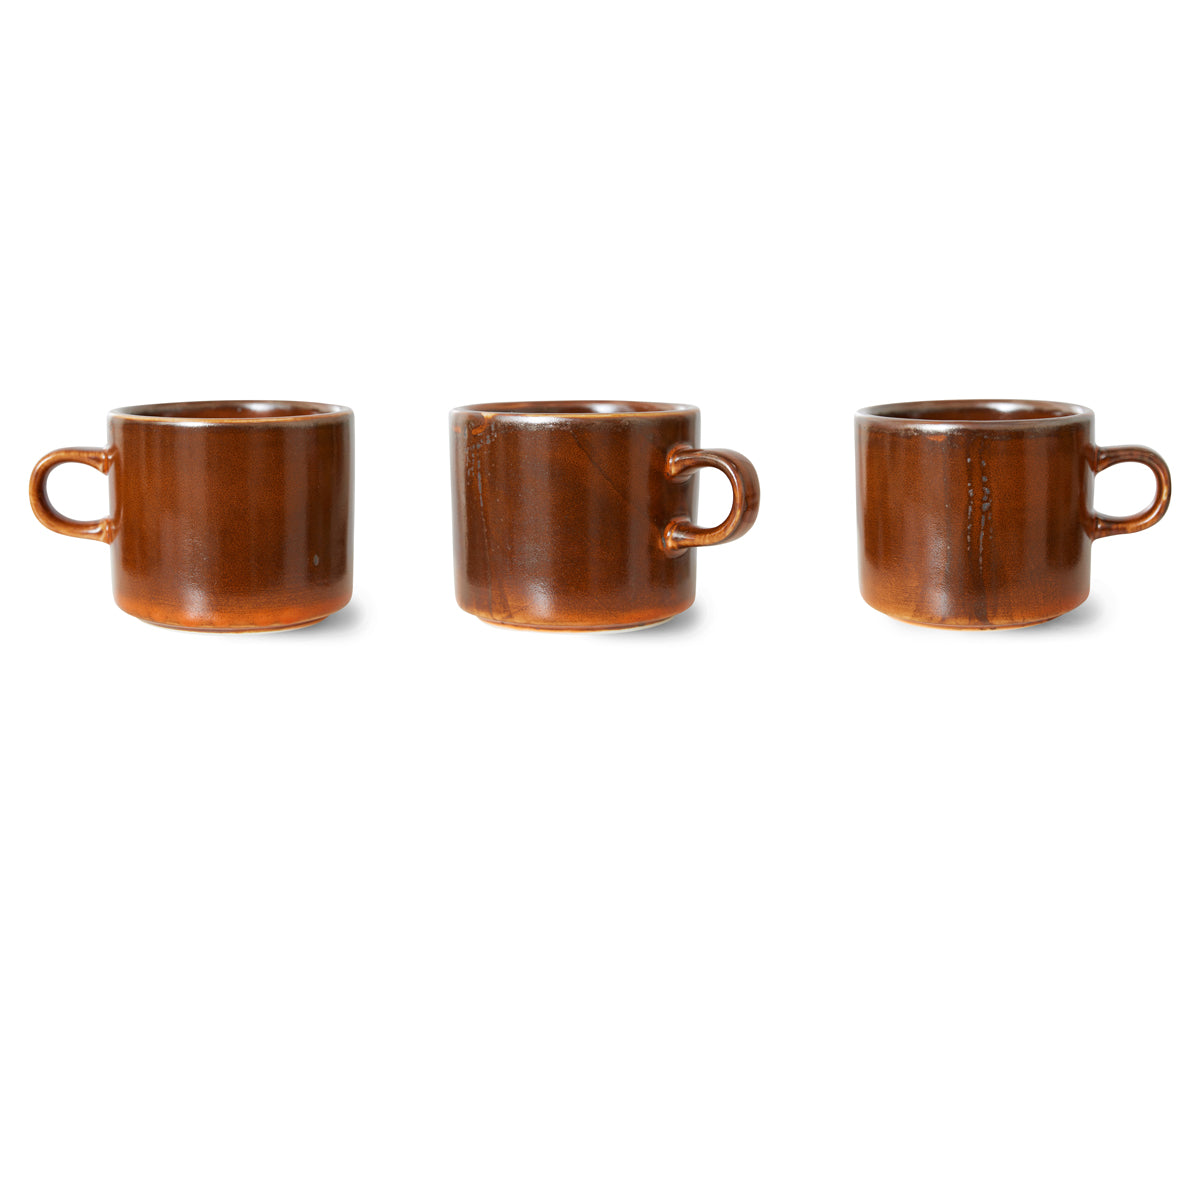 HkLiving Home Chef Ceramics: Cup & Saucer Burned Orange ACE7203